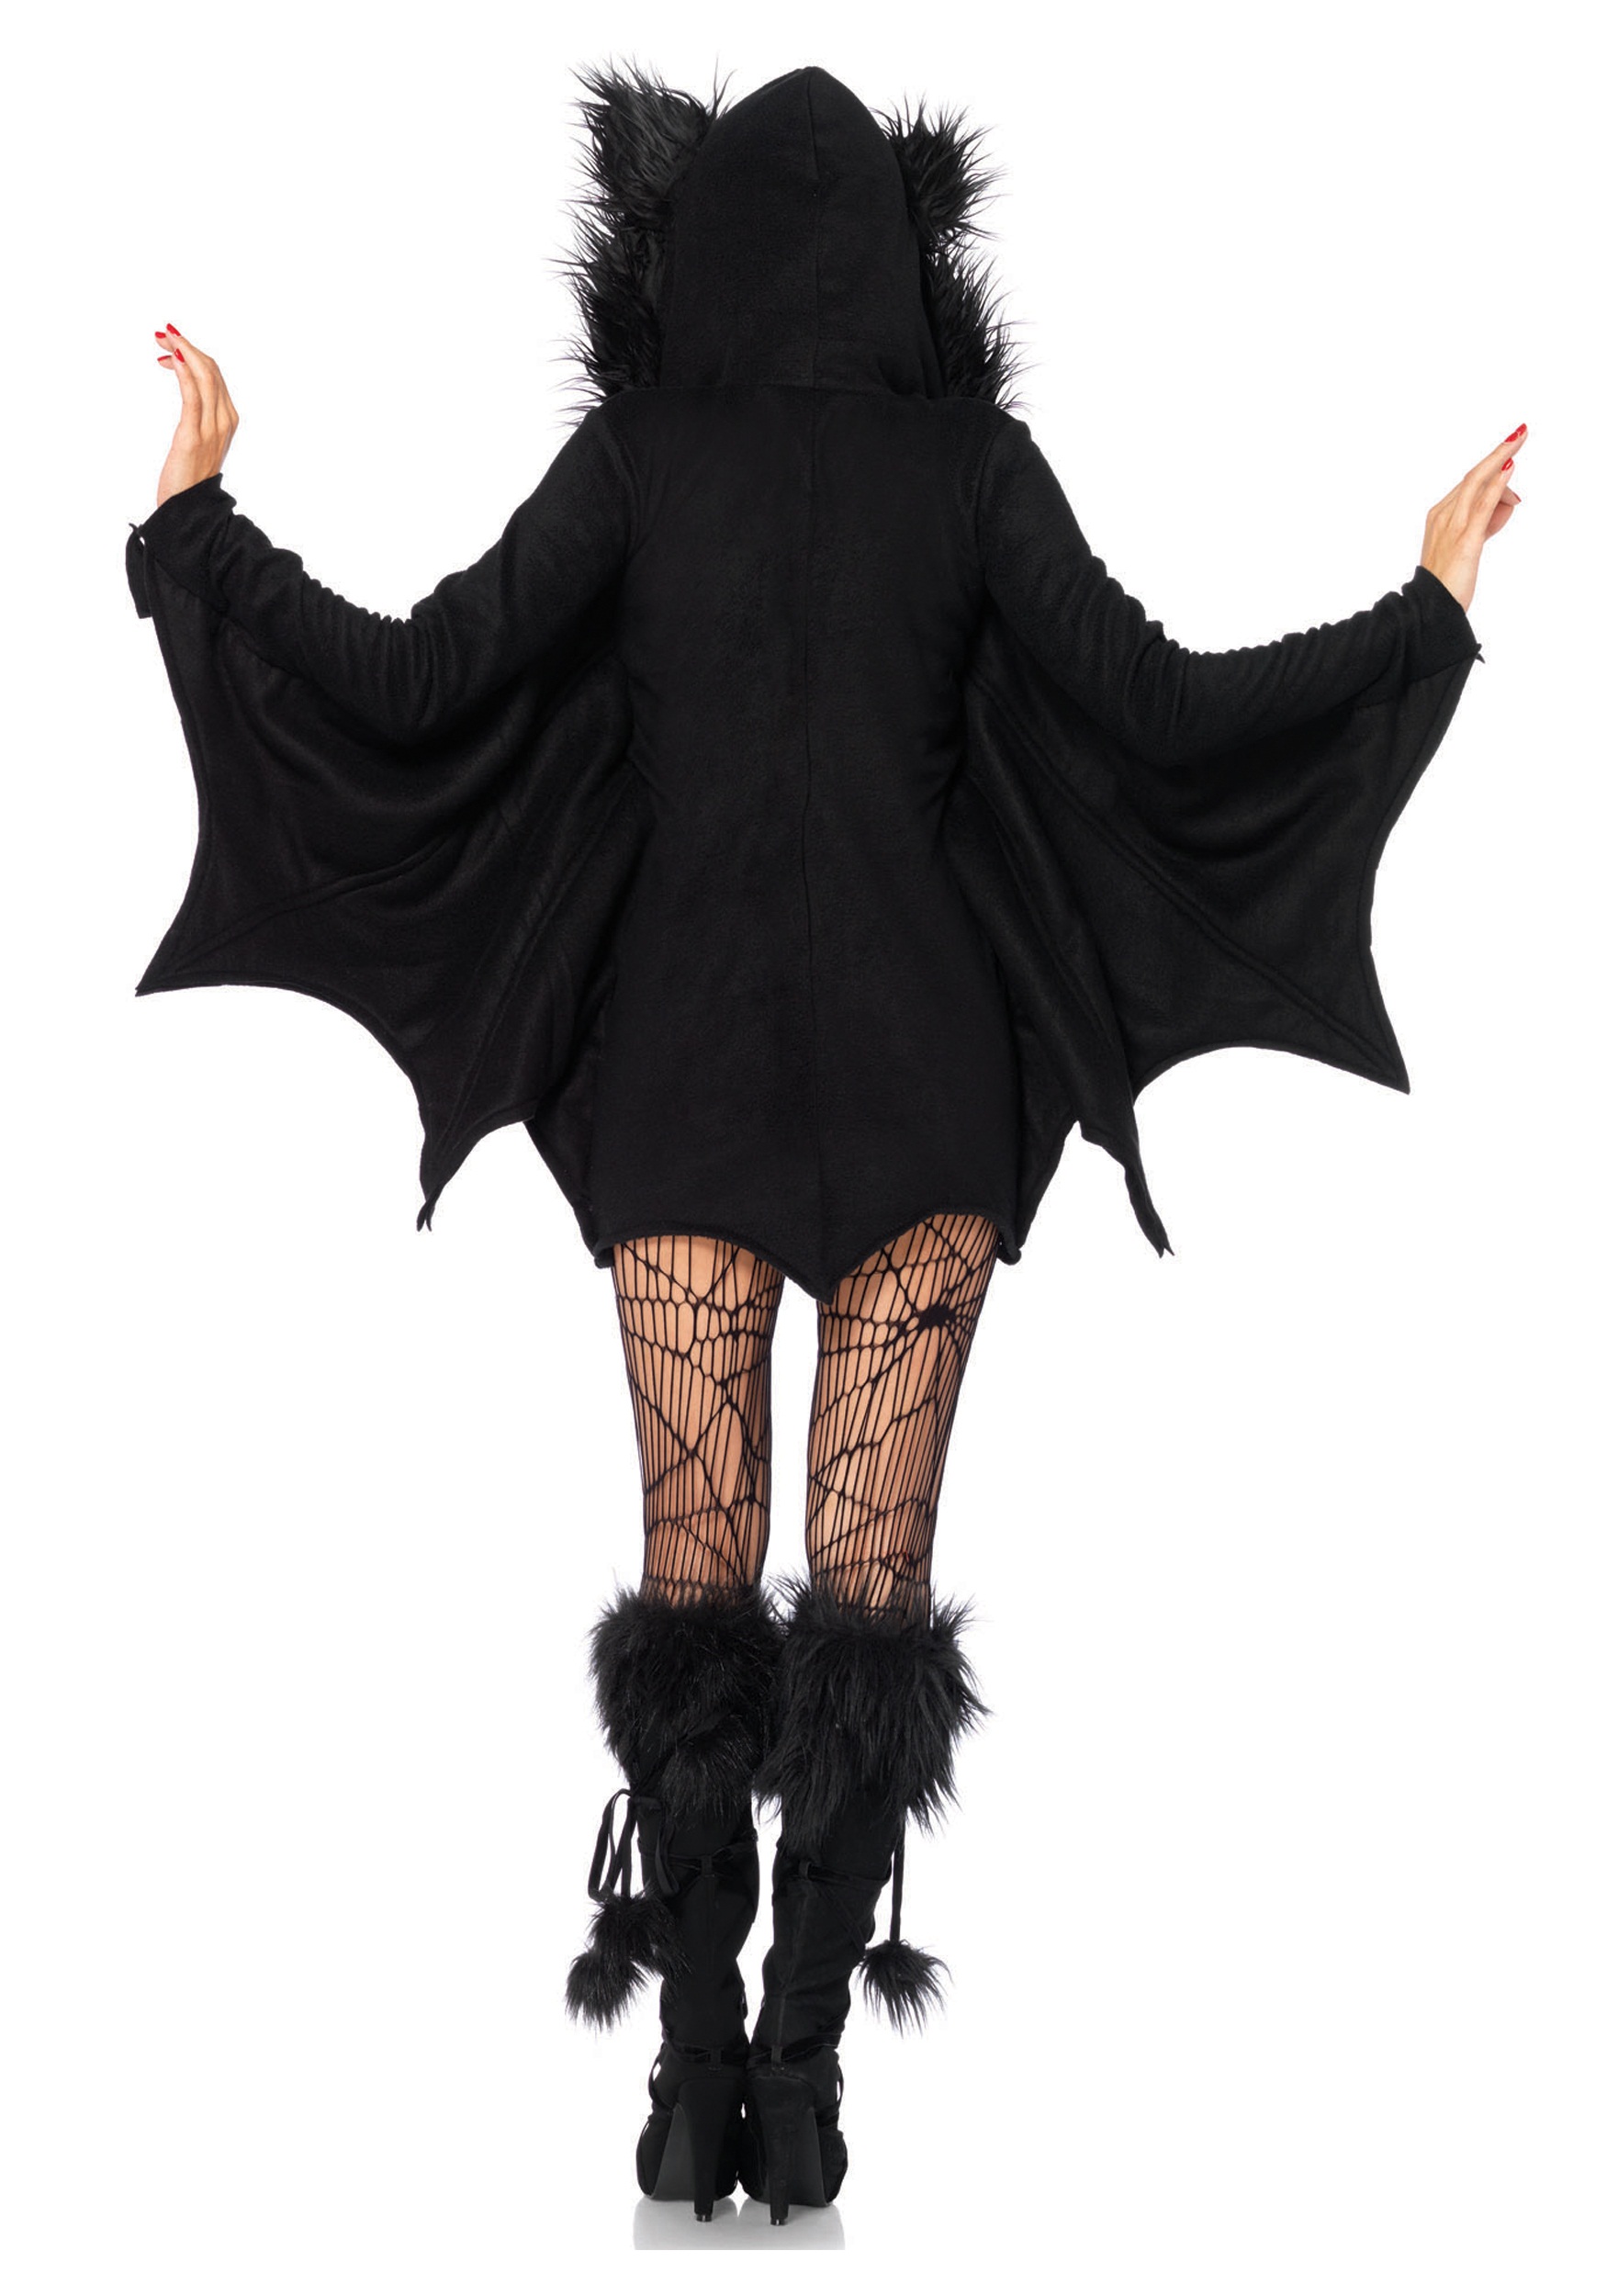 Cozy Bat Adult Costume